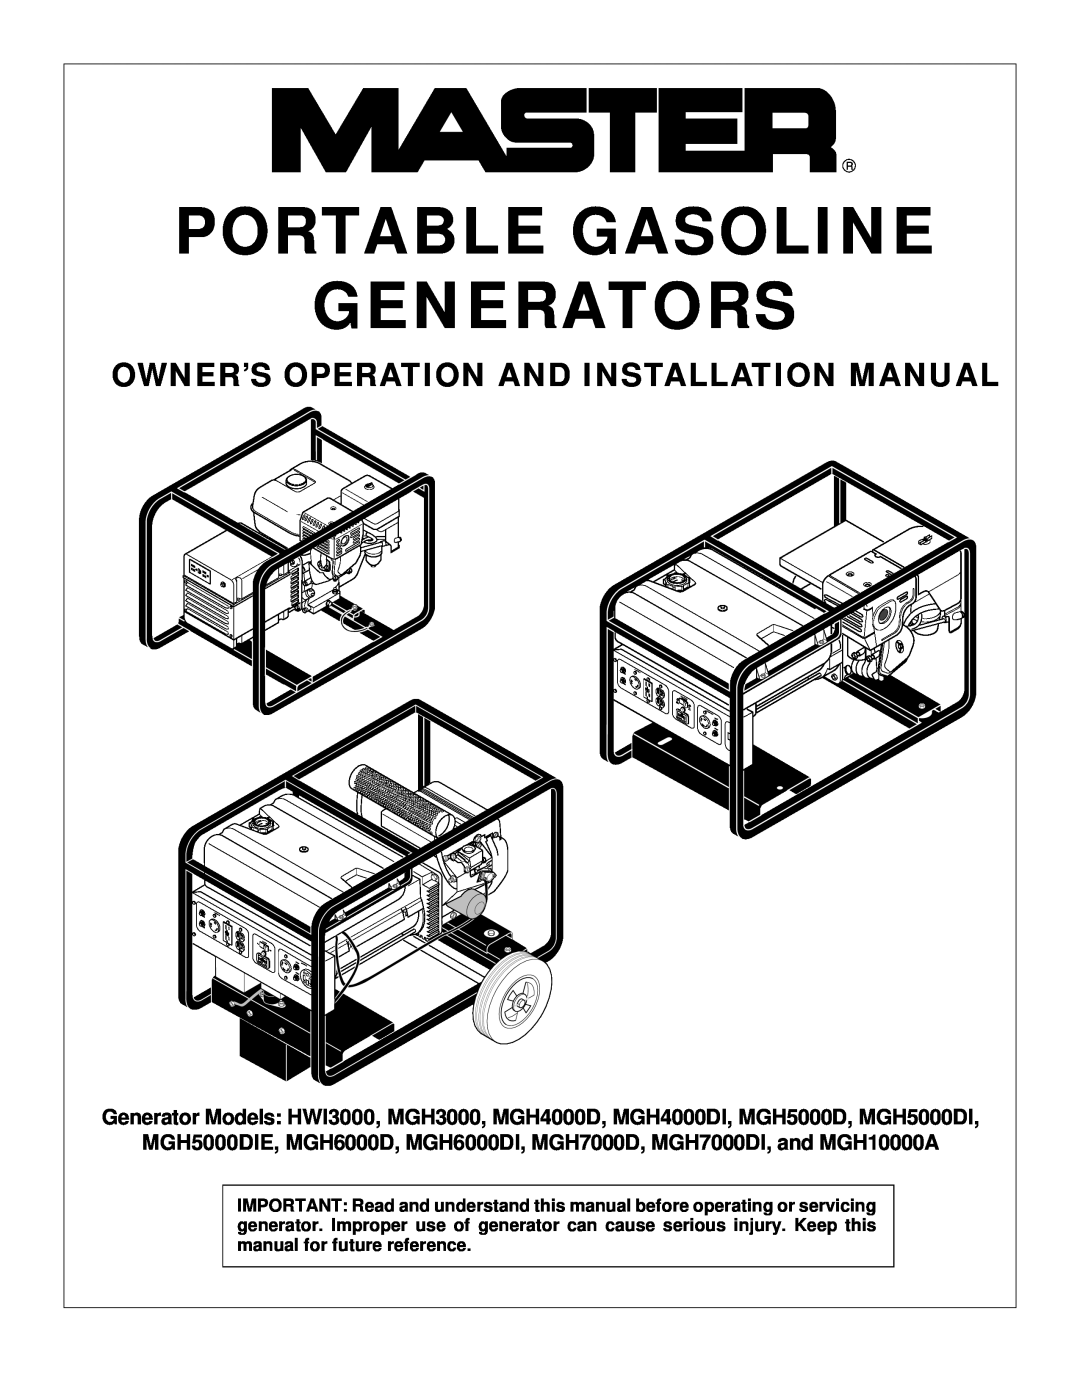 Master Lock installation manual Owner’S Operation And Installation Manual, Portable Gasoline Generators 